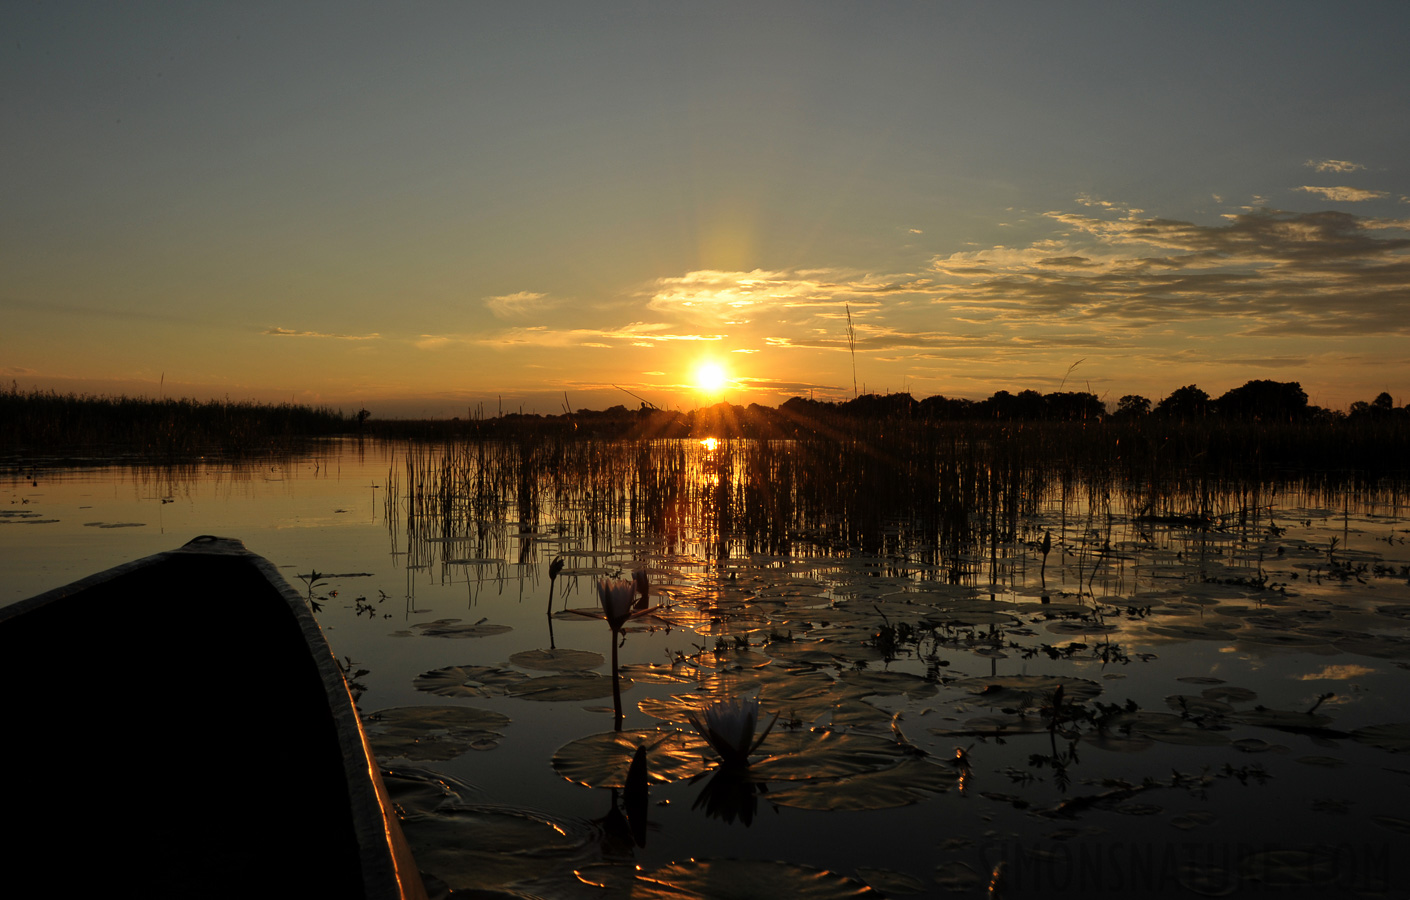 Okavango Delta [28 mm, 1/160 sec at f / 22, ISO 400]